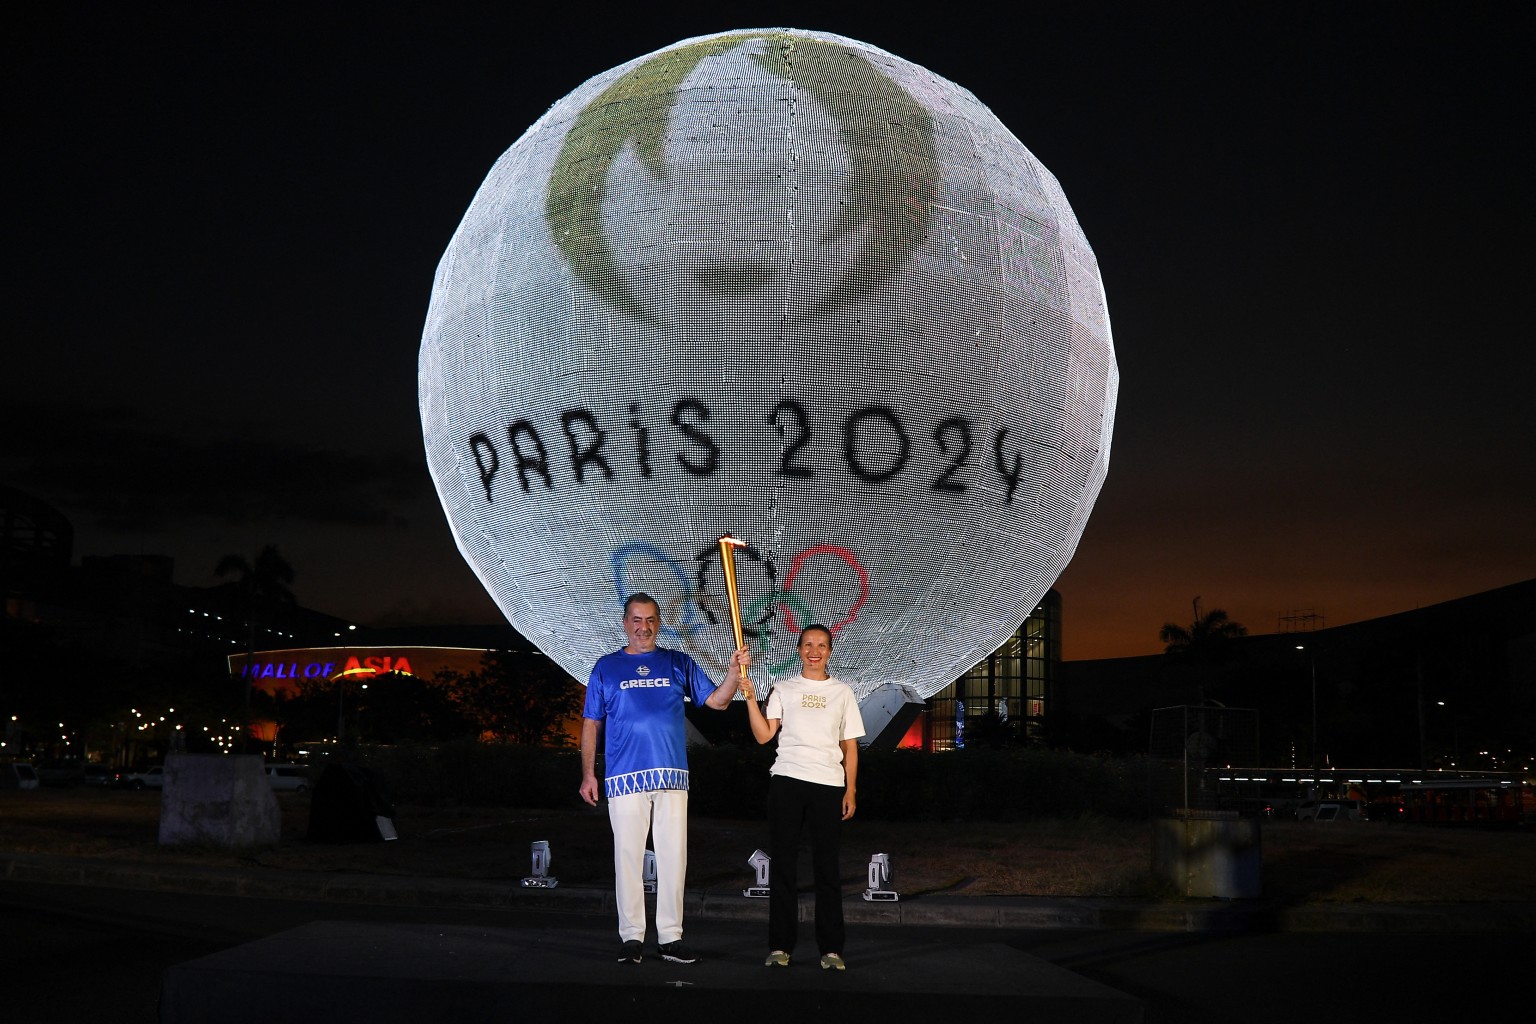 สำรวจความพร้อมฝรั่งเศสเจ้าภาพ “paris 2024” งานนี้ไม่ได้มีดีแค่กีฬา